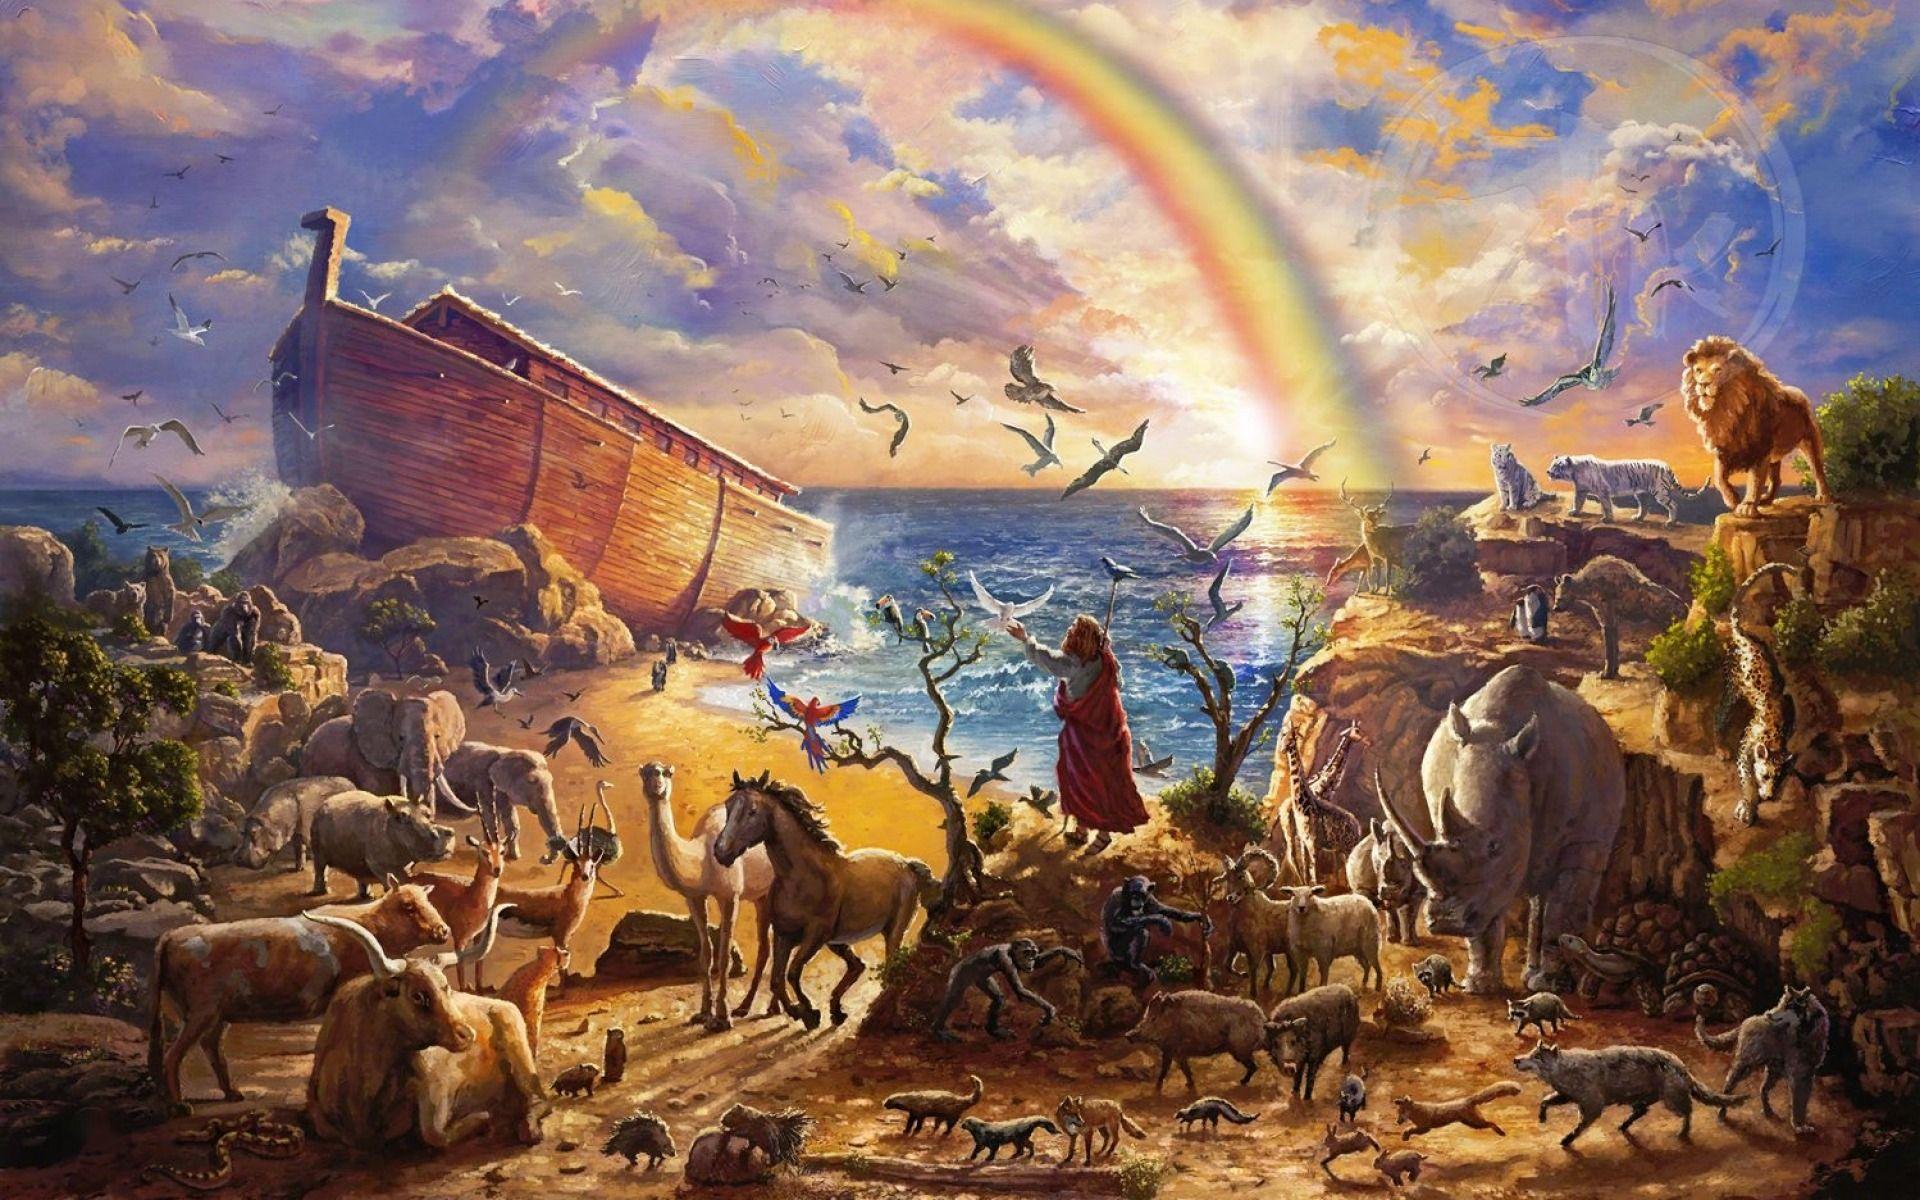 Noahs Ark Eight wallpaper. Noahs Ark Eight